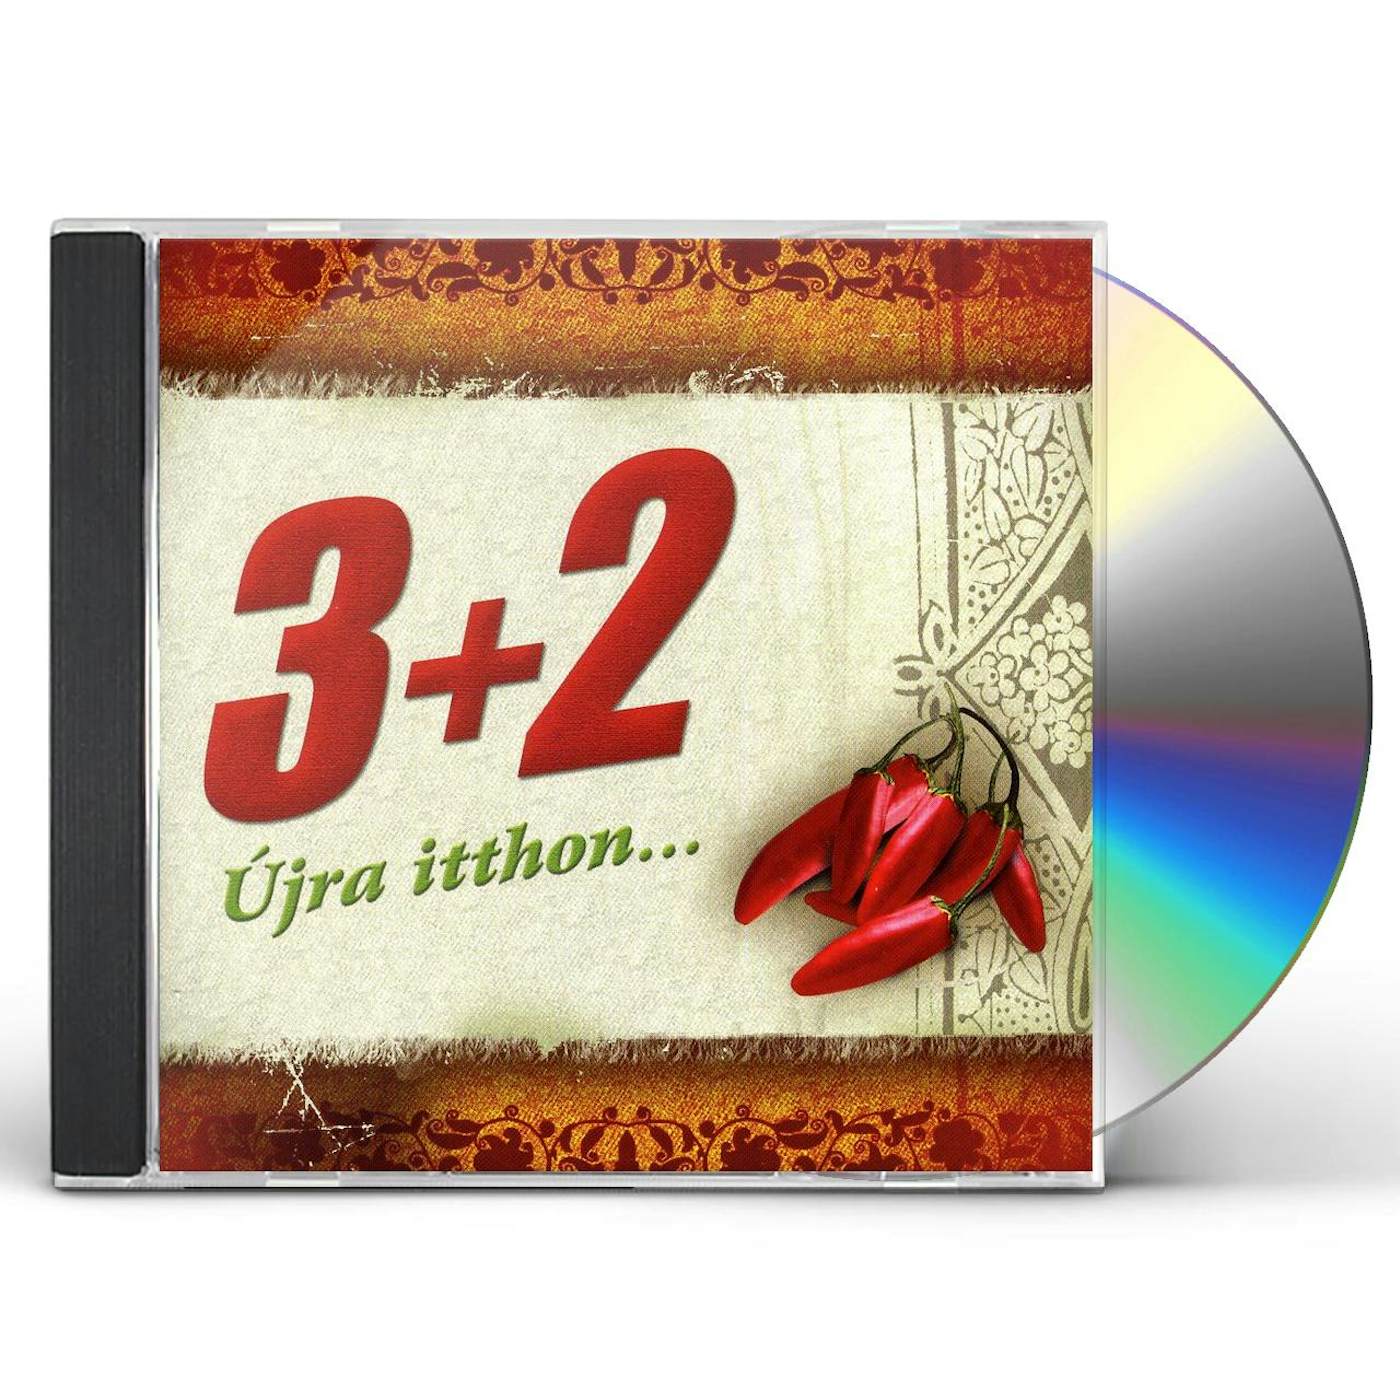 3-2 ULJA ITTHON CD